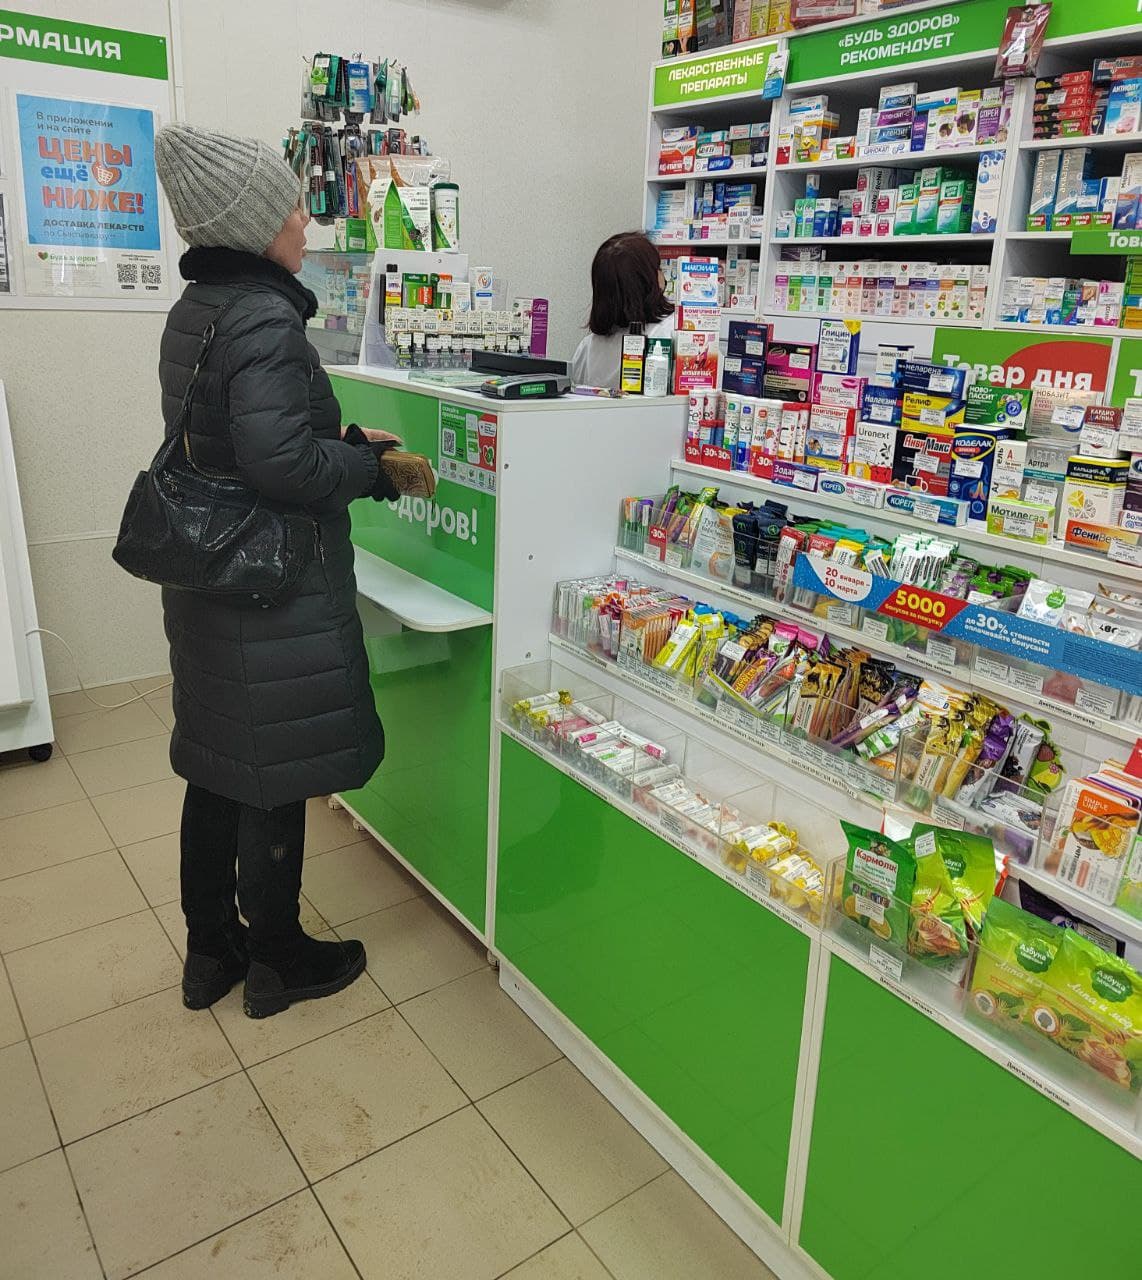 "Лекарства сильно подорожали": сыктывкарцы и фармацевты рассказали о повышении цен